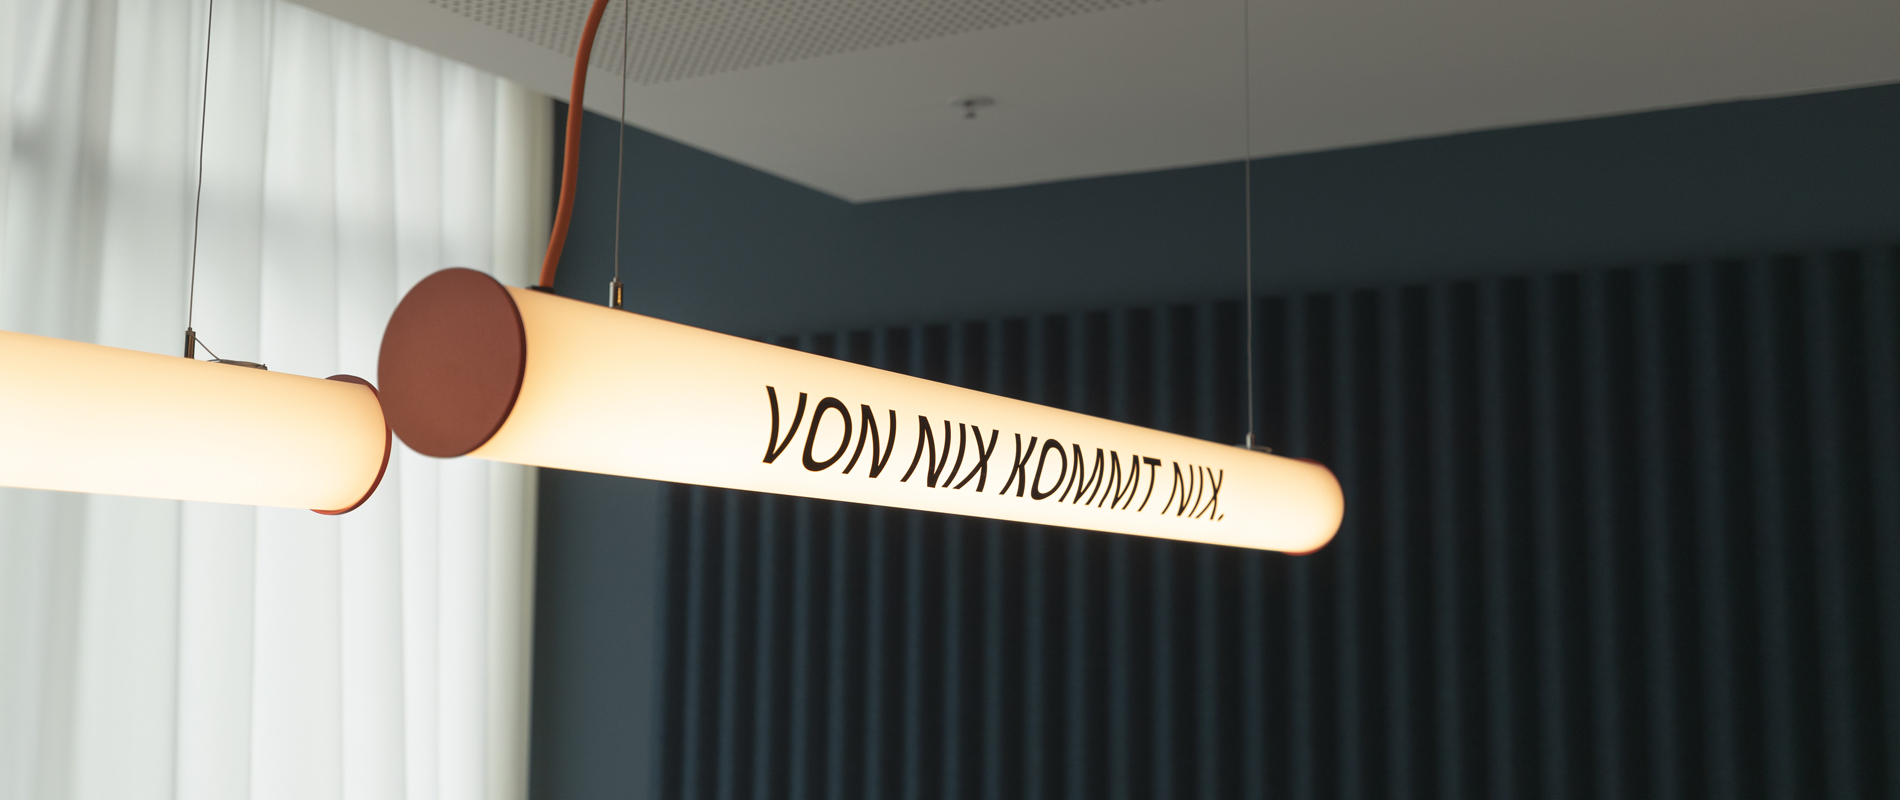 Zwei Deckenlampen im Regional Office Hamburg, auf denen "Von nichts, kommt nichts" steht.